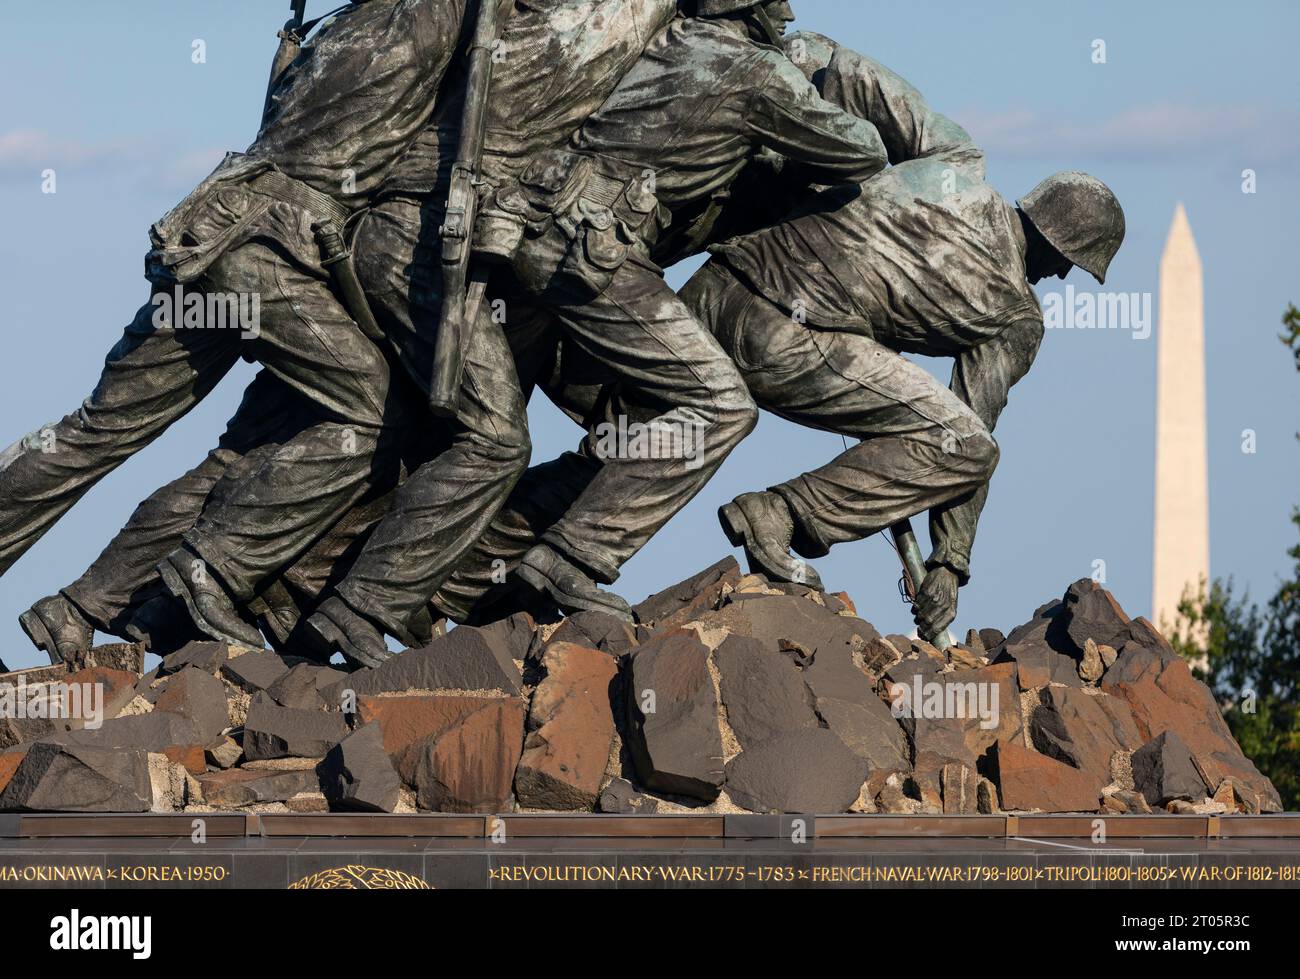 ROSSLYN, ARLINGTON, VIRGINIA, EE.UU. - Detalle del Memorial de Guerra del Cuerpo de Infantería de Marina de los Estados Unidos Iwo Jima. Foto de stock